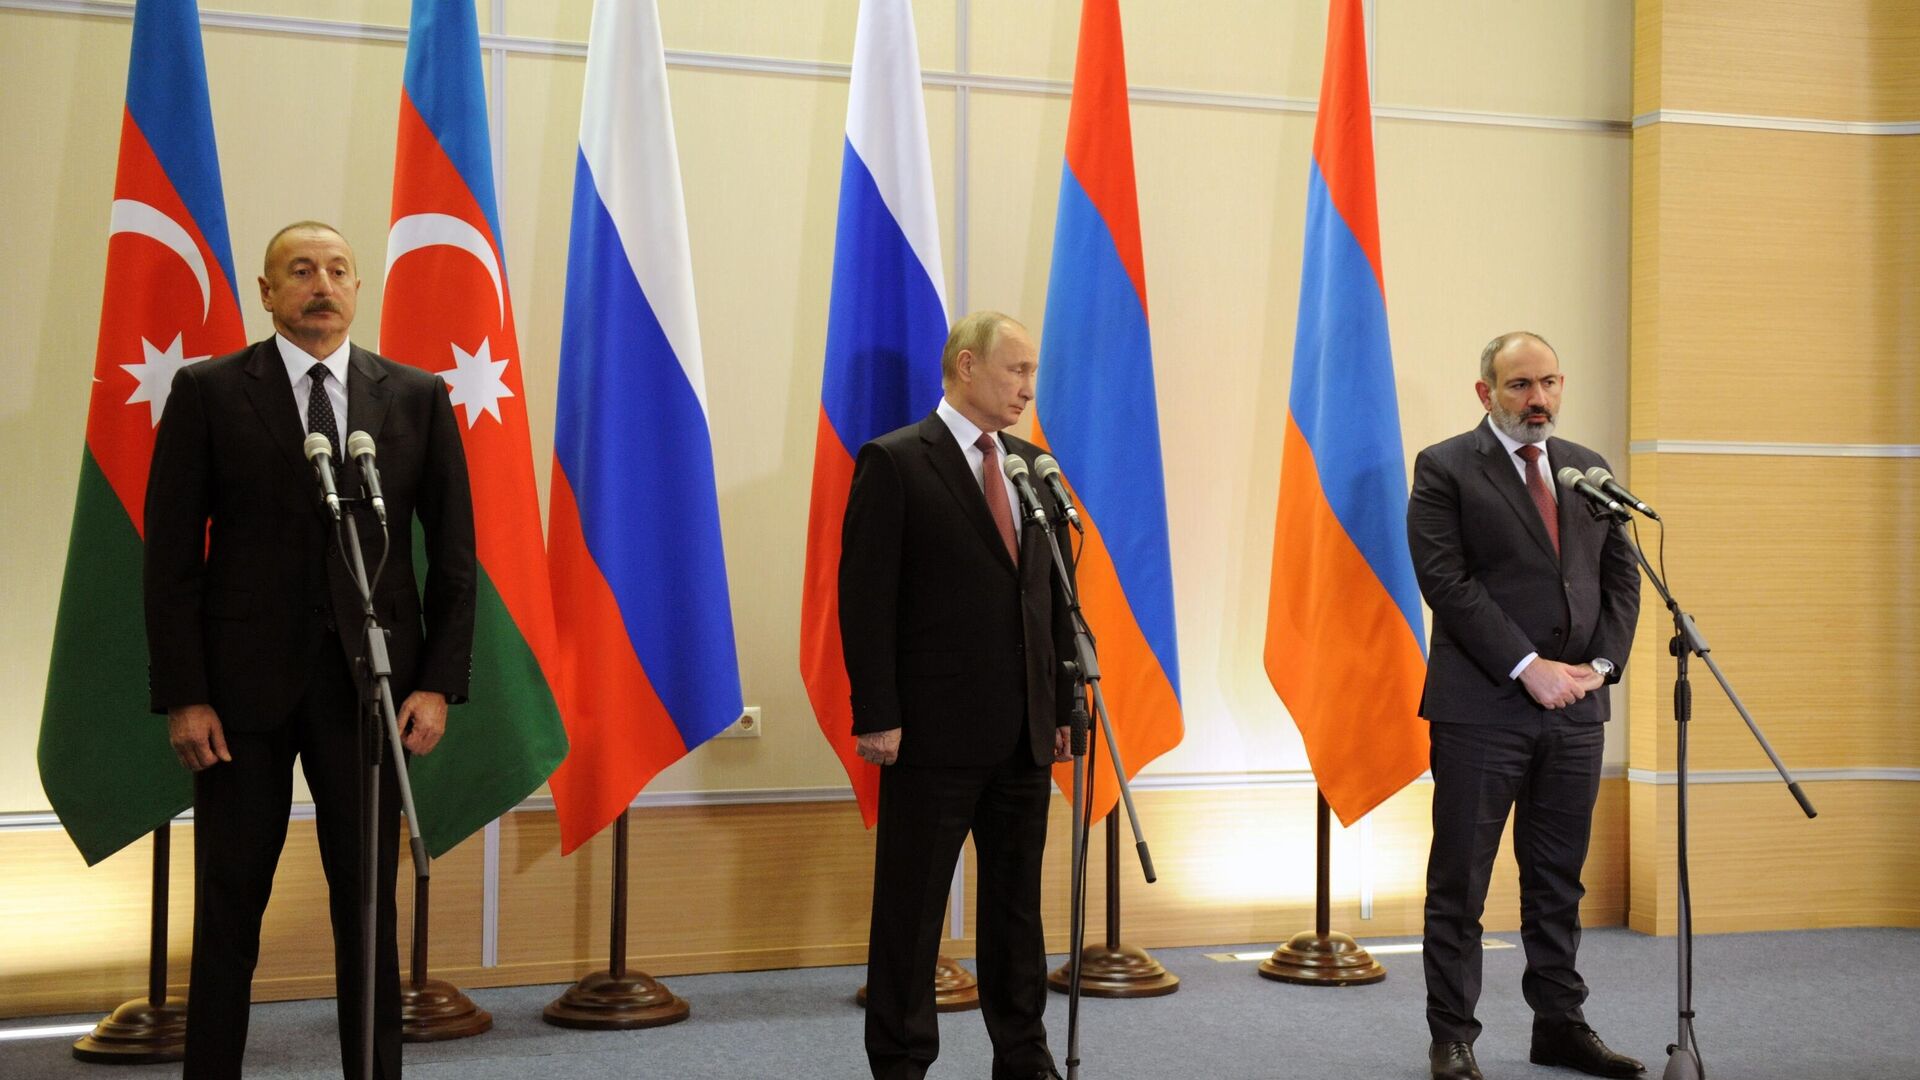 Pregovori u Sočiju, predsednik Azerbejdžana Ilham Alijev, predsednik Rusije Vladimir Putin i premijer Jermenije Nikol Pašinjan - Sputnik Srbija, 1920, 26.11.2021